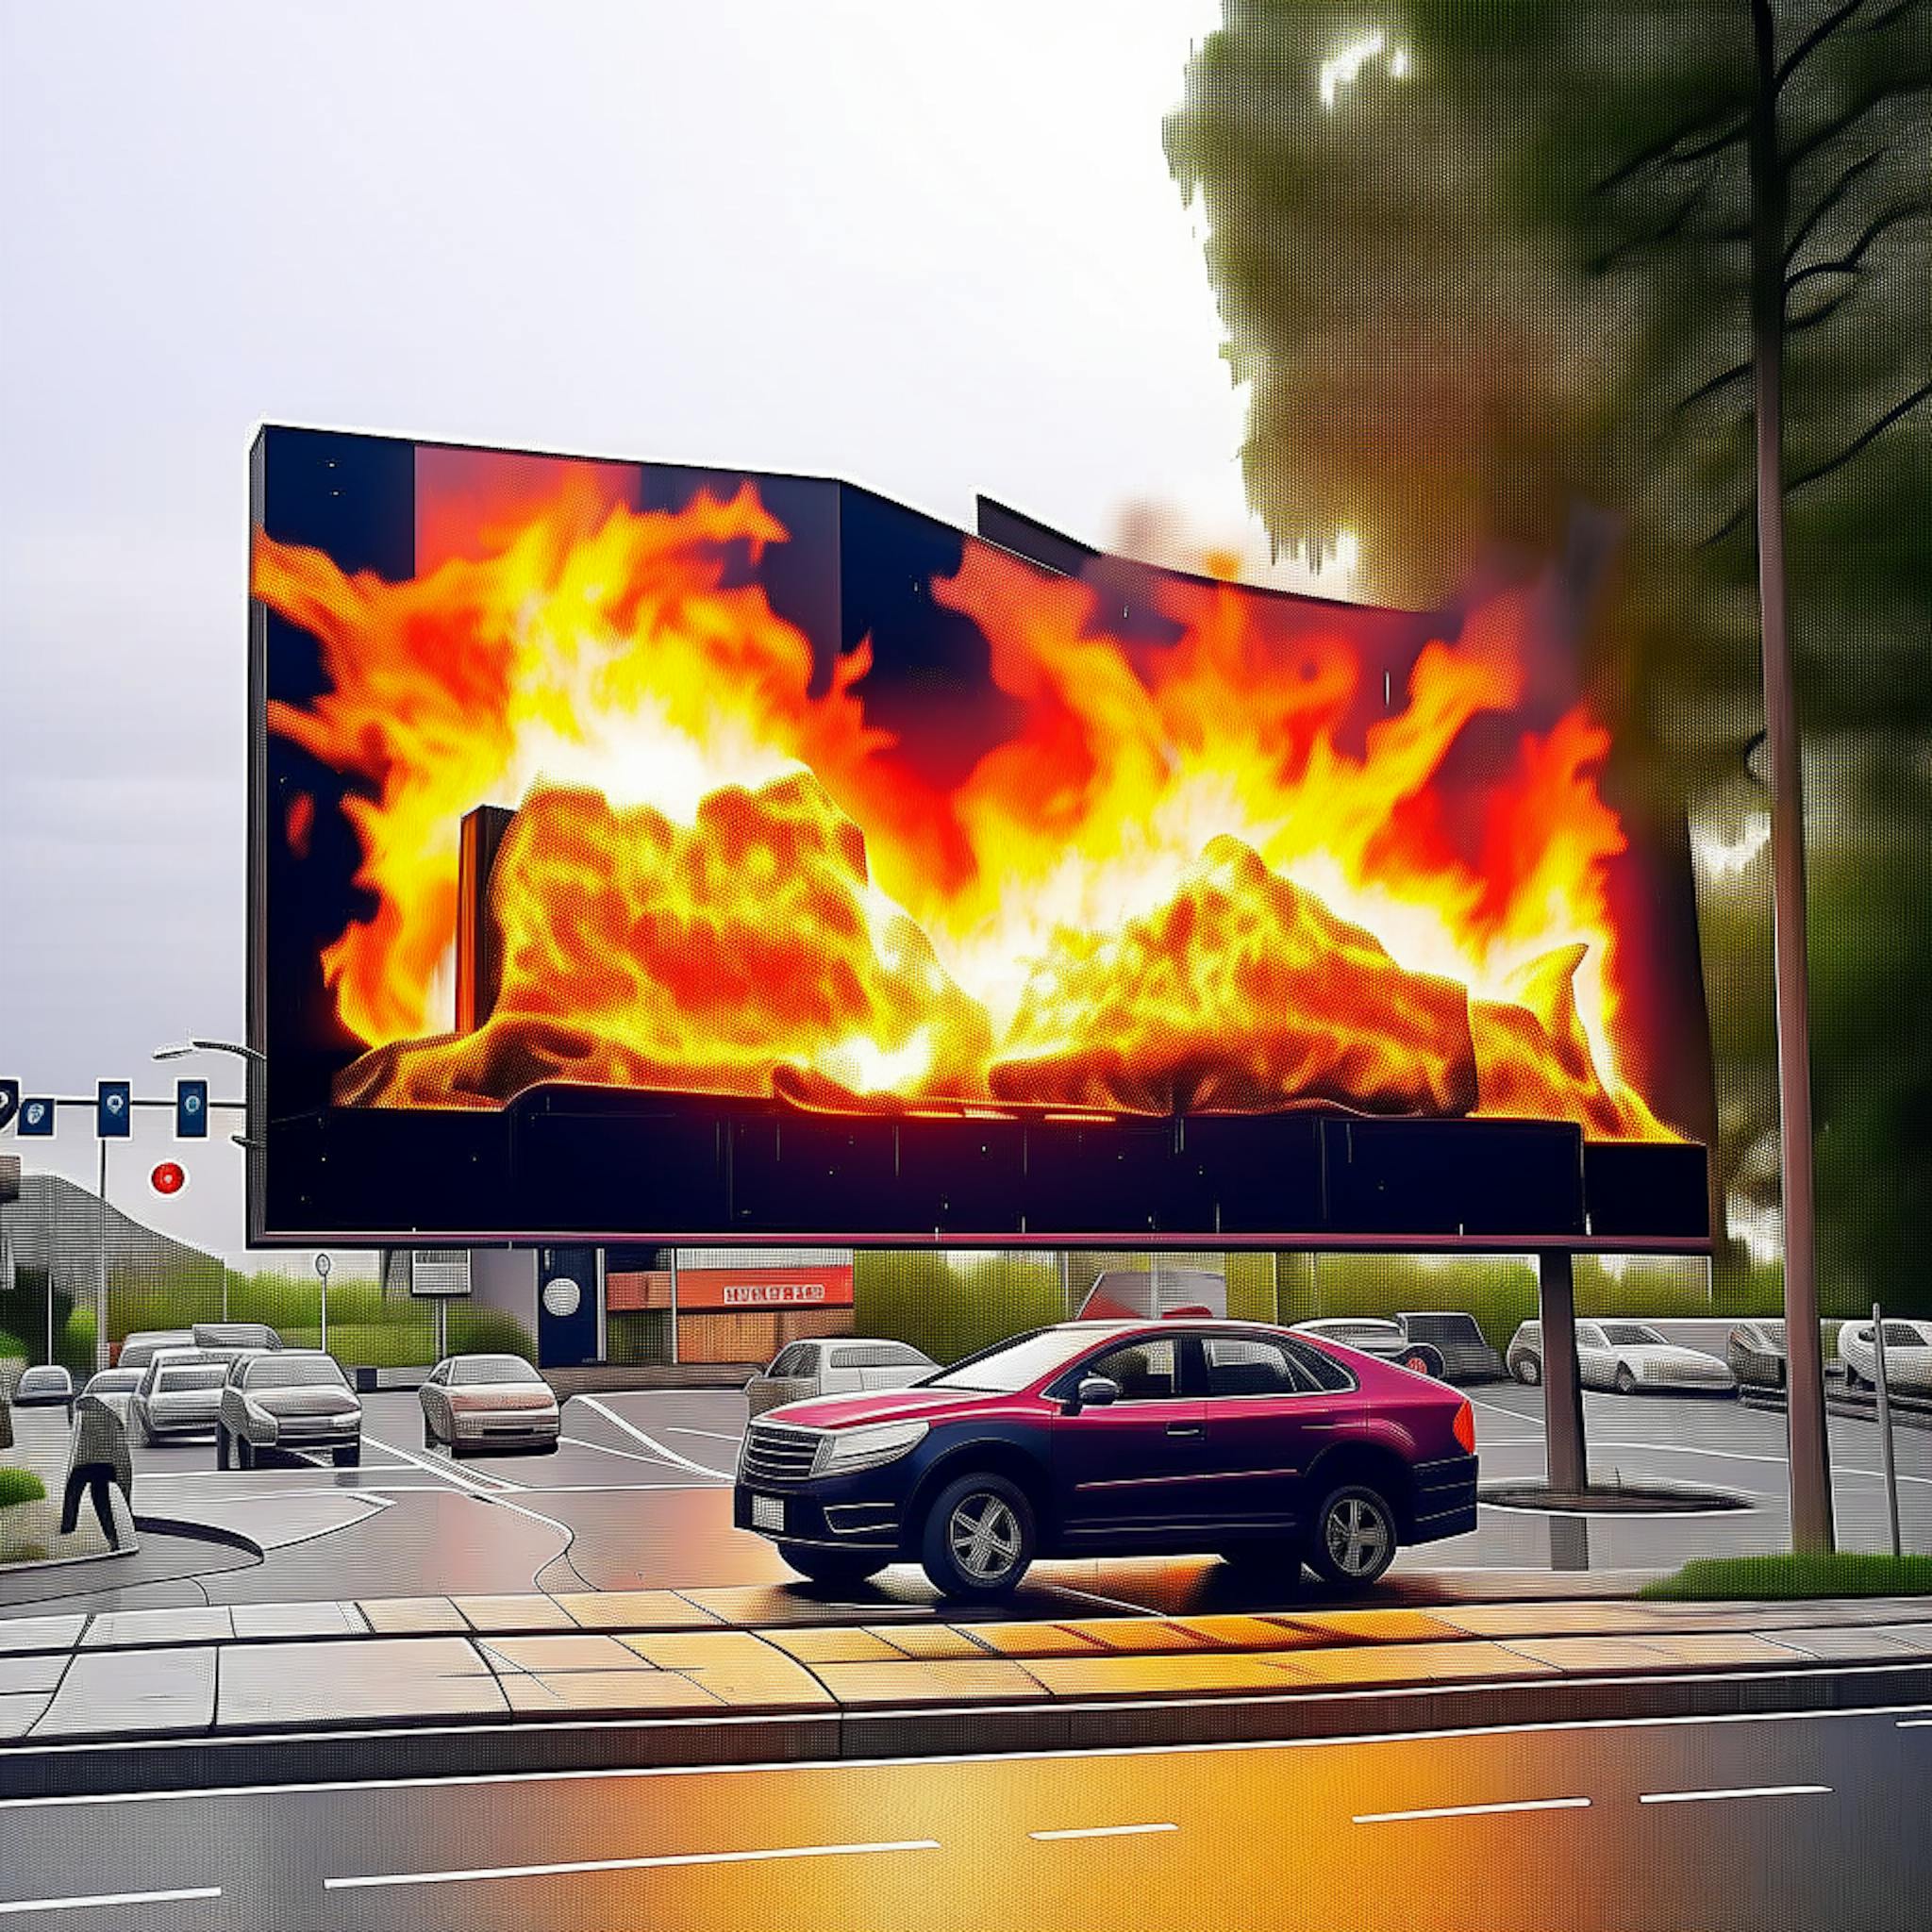 featured image - ¿Se puede prender fuego a una valla publicitaria para obtener puntos de marketing?